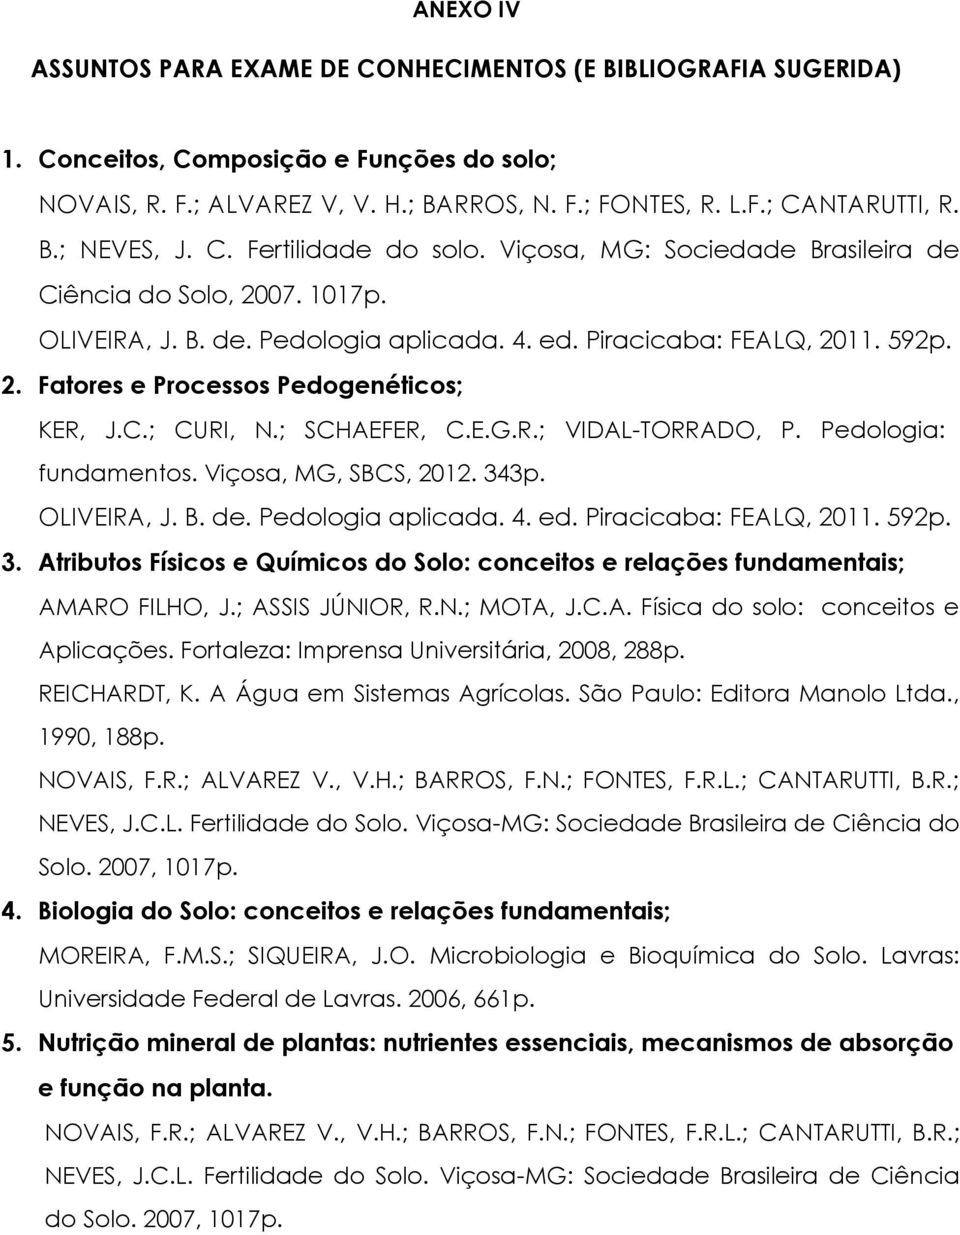 C.; CURI, N.; SCHAEFER, C.E.G.R.; VIDAL-TORRADO, P. Pedologia: fundamentos. Viçosa, MG, SBCS, 2012. 343p. OLIVEIRA, J. B. de. Pedologia aplicada. 4. ed. Piracicaba: FEALQ, 2011. 592p. 3. Atributos Físicos e Químicos do Solo: conceitos e relações fundamentais; AMARO FILHO, J.